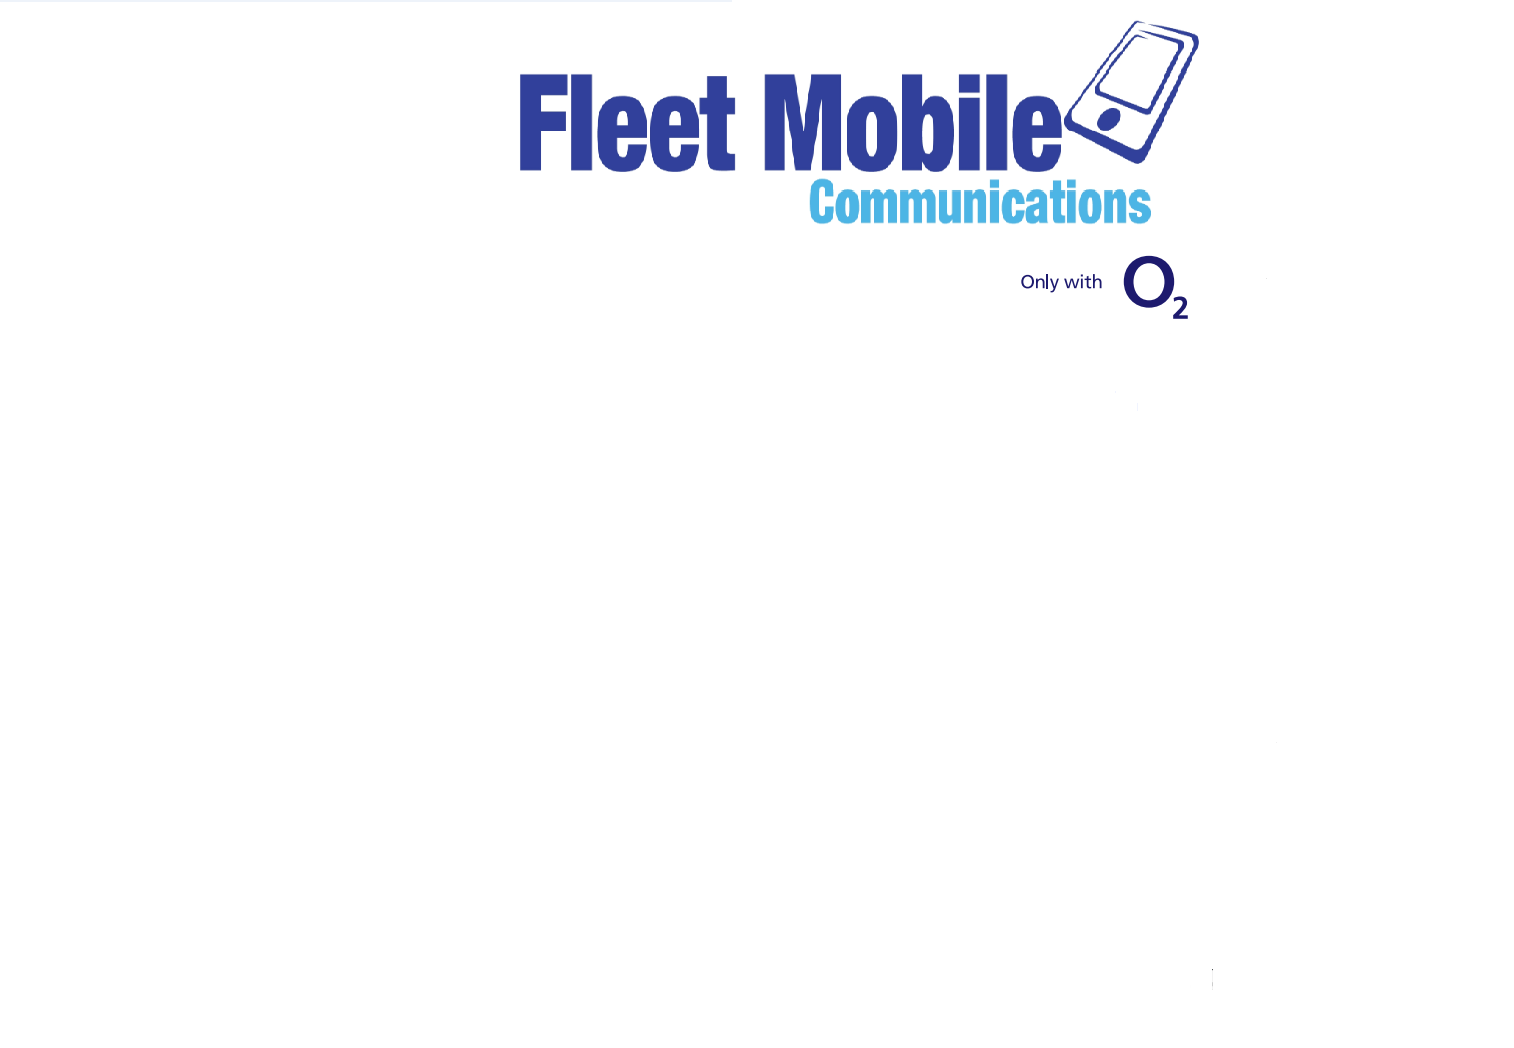 Fleet Mobile